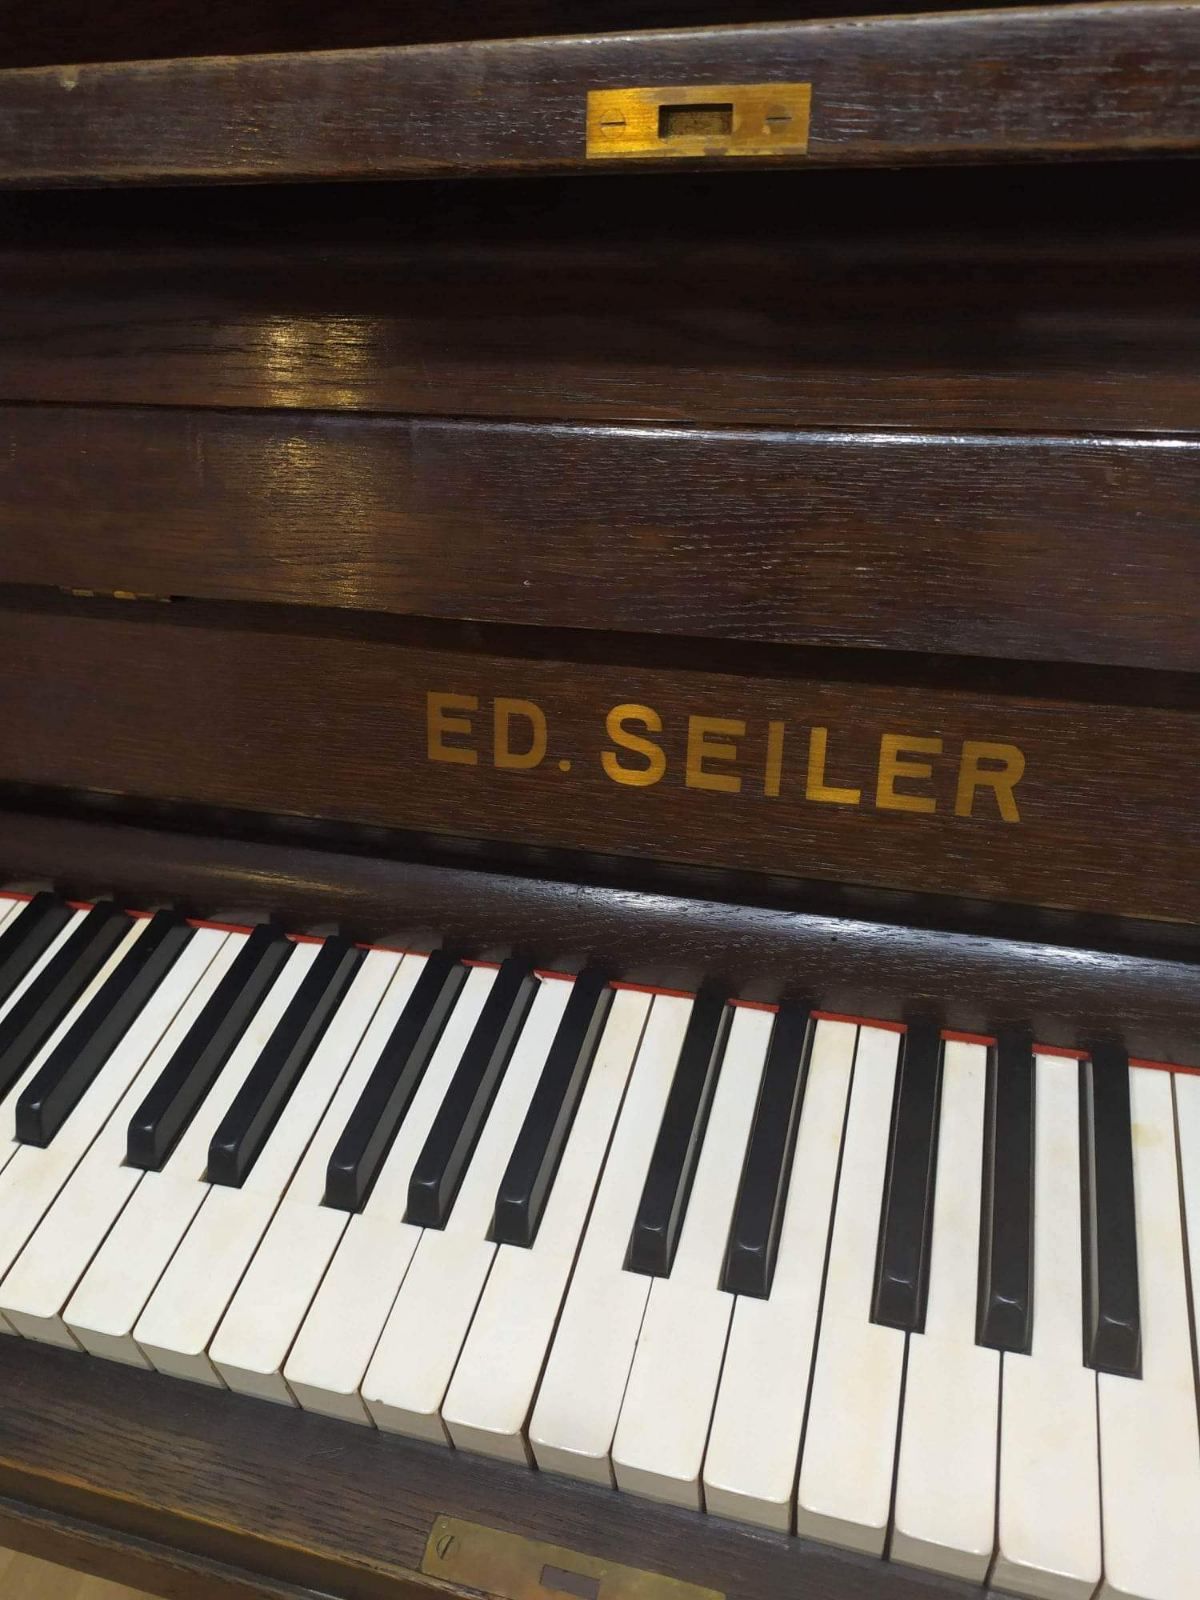 Піаніно/фортепіано Ed. Seiler 1927 року